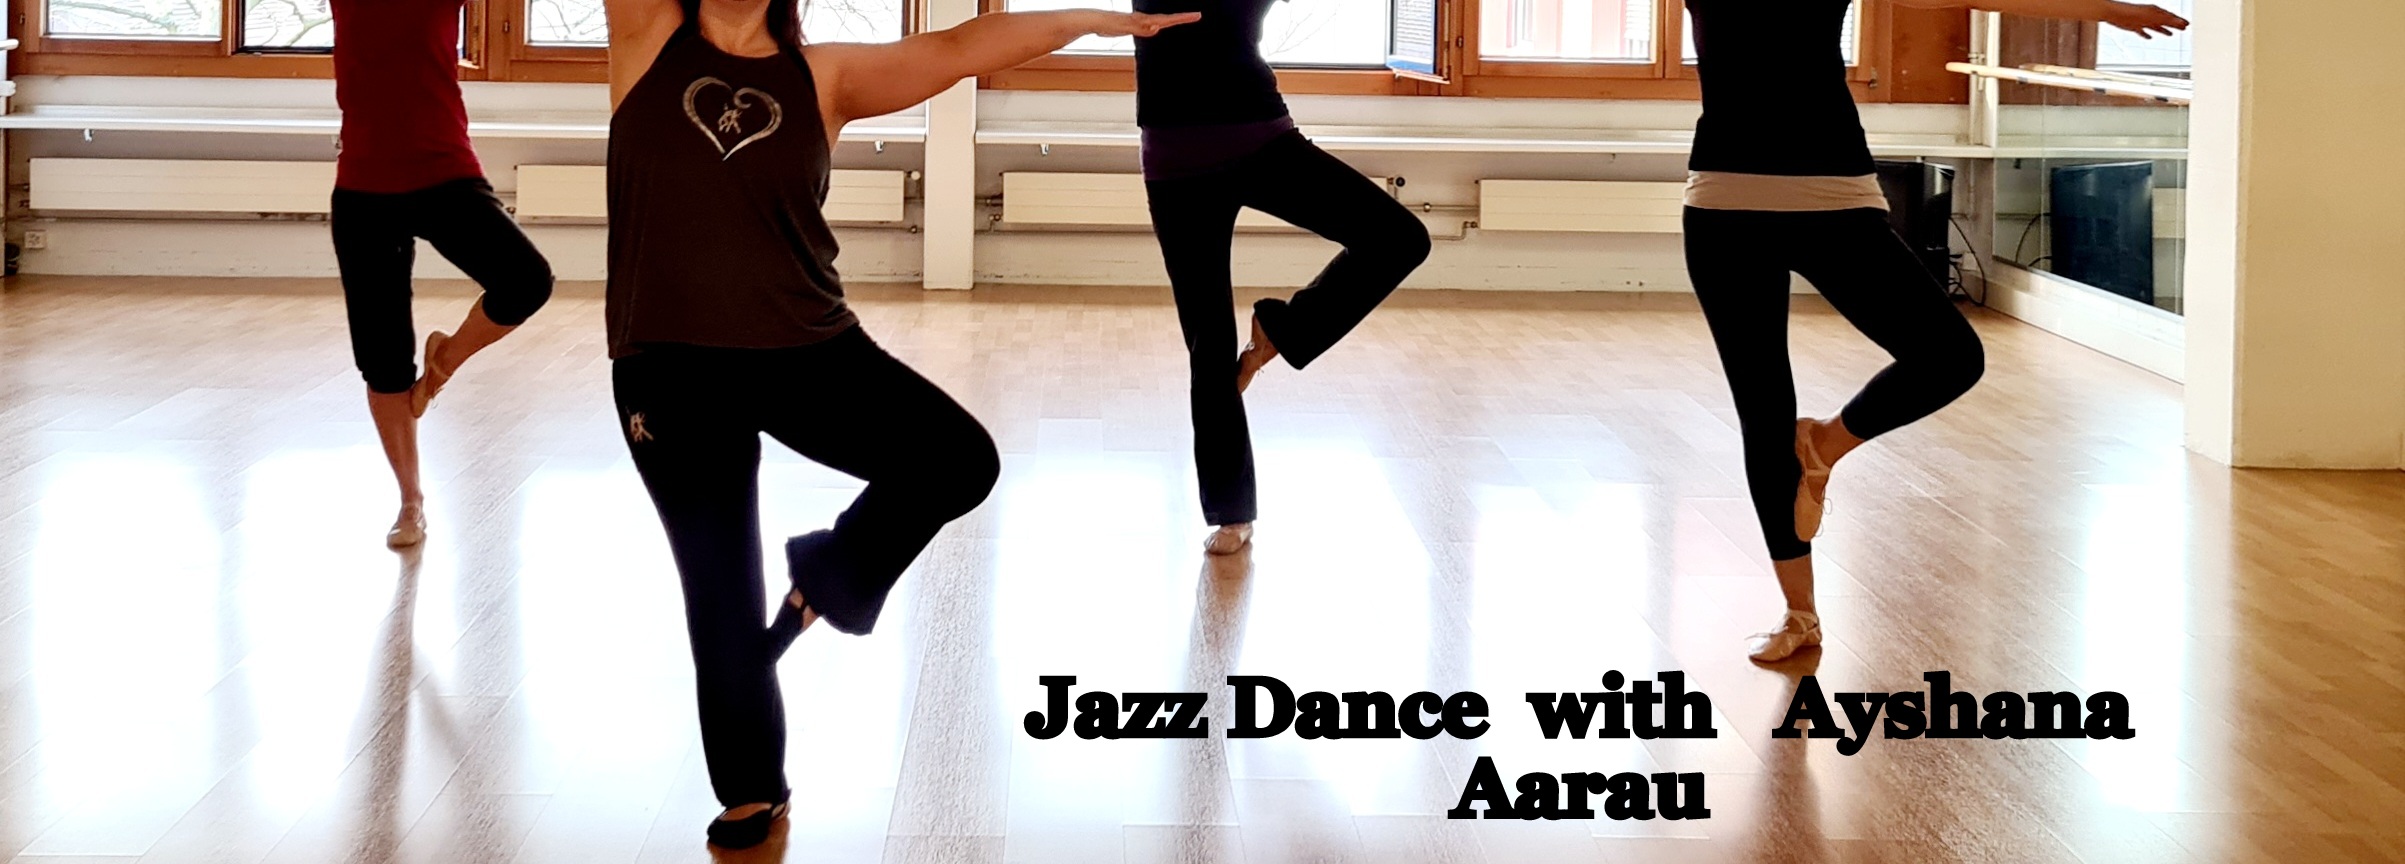 Jazz Dance März 22 1